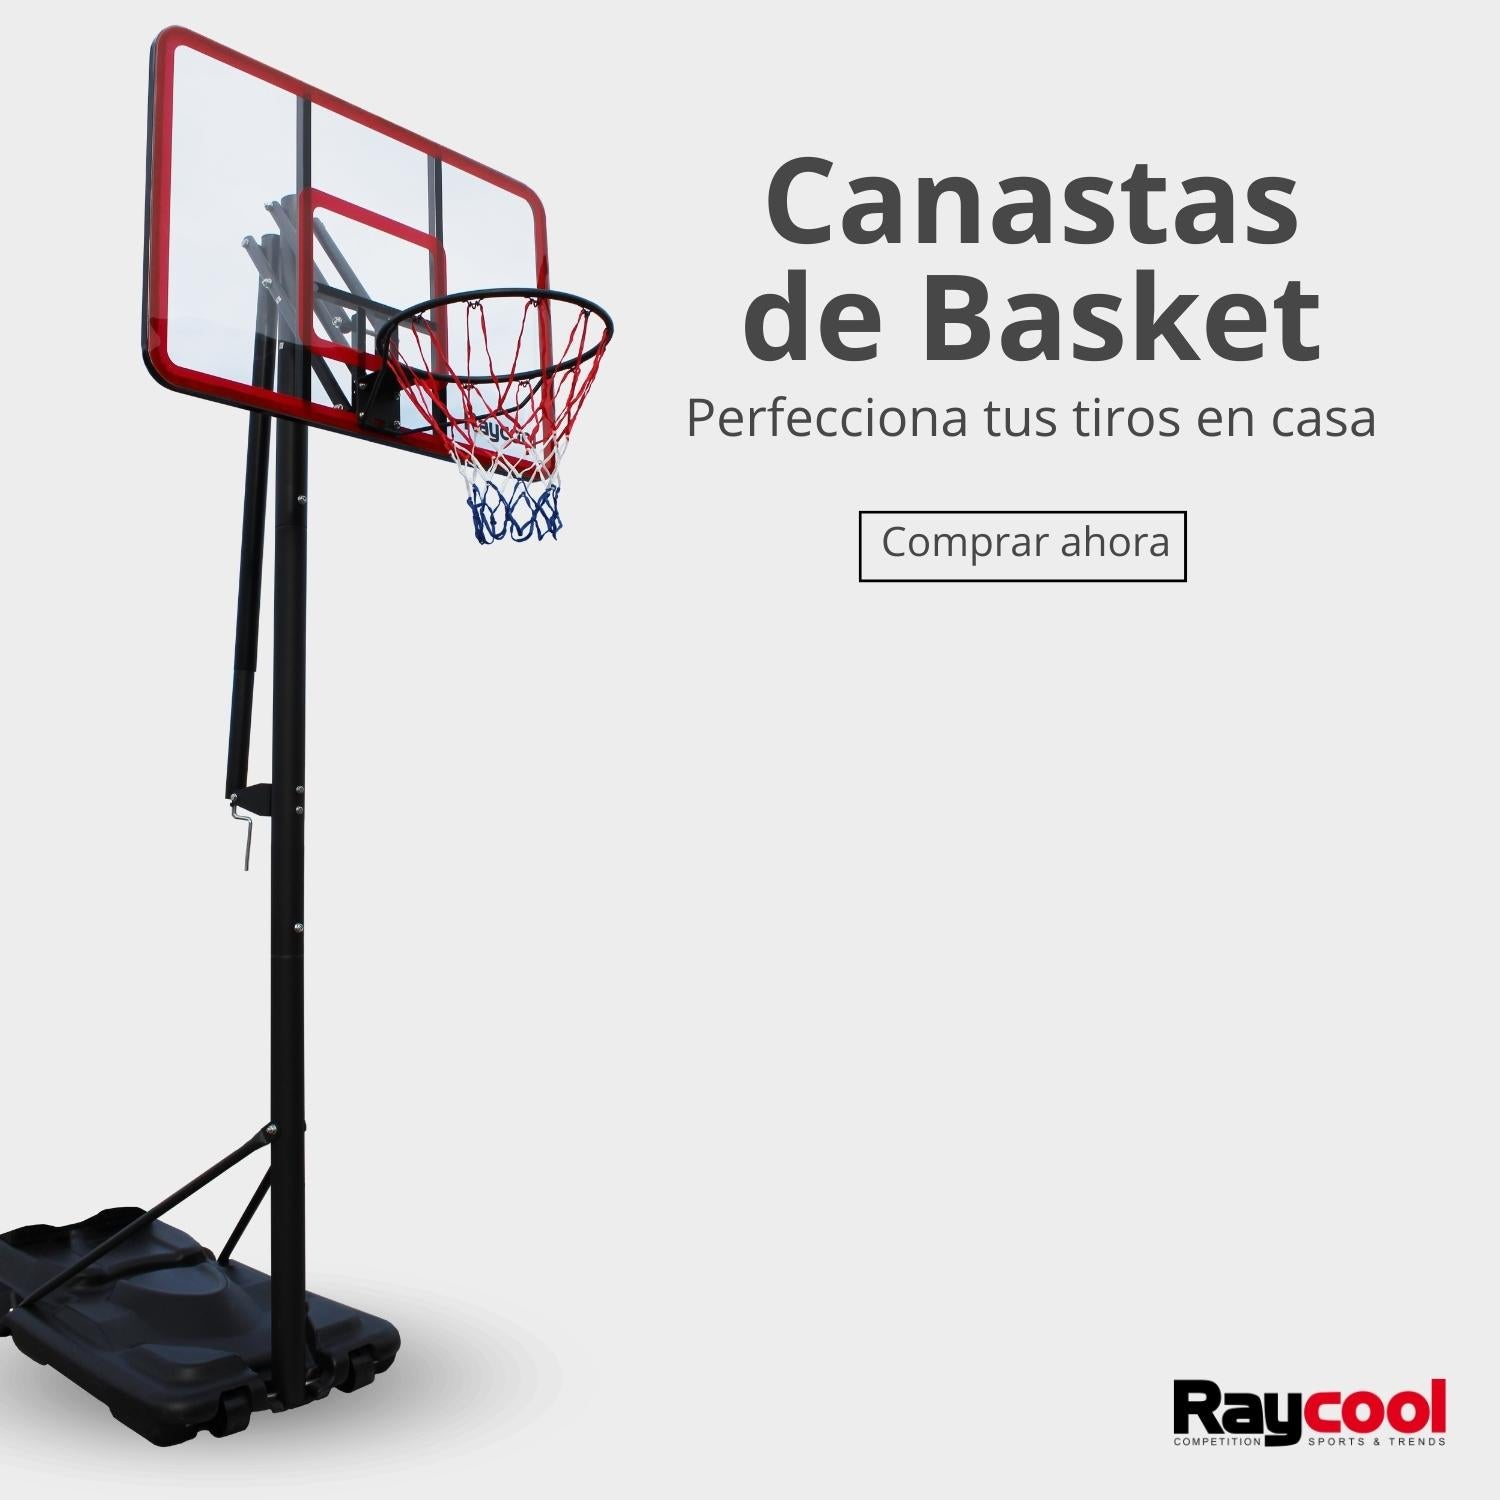 Canastas de Basket Raycool